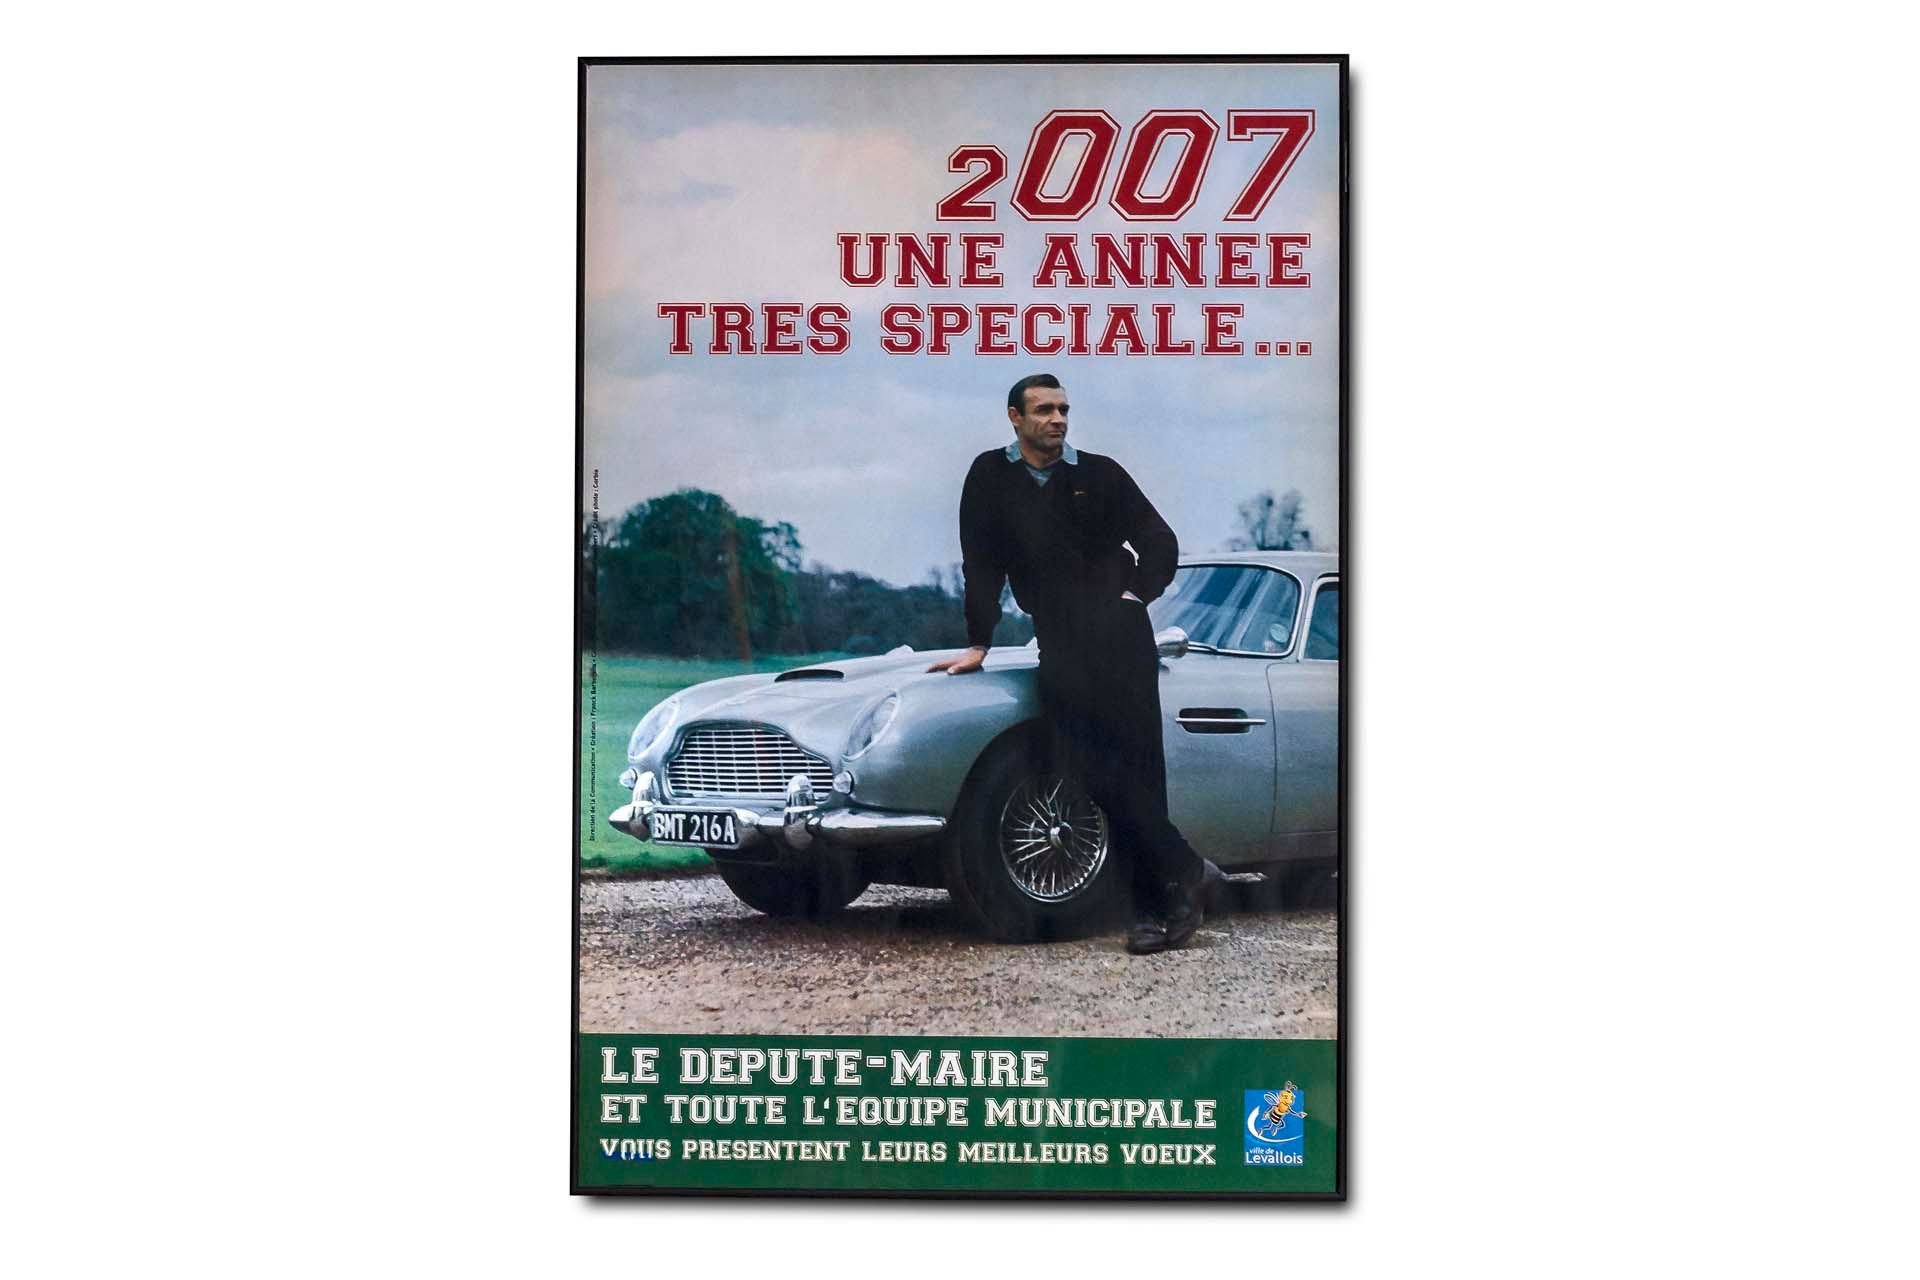 For Sale Large Framed 'James Bond Tres Speciale' Movie Poster